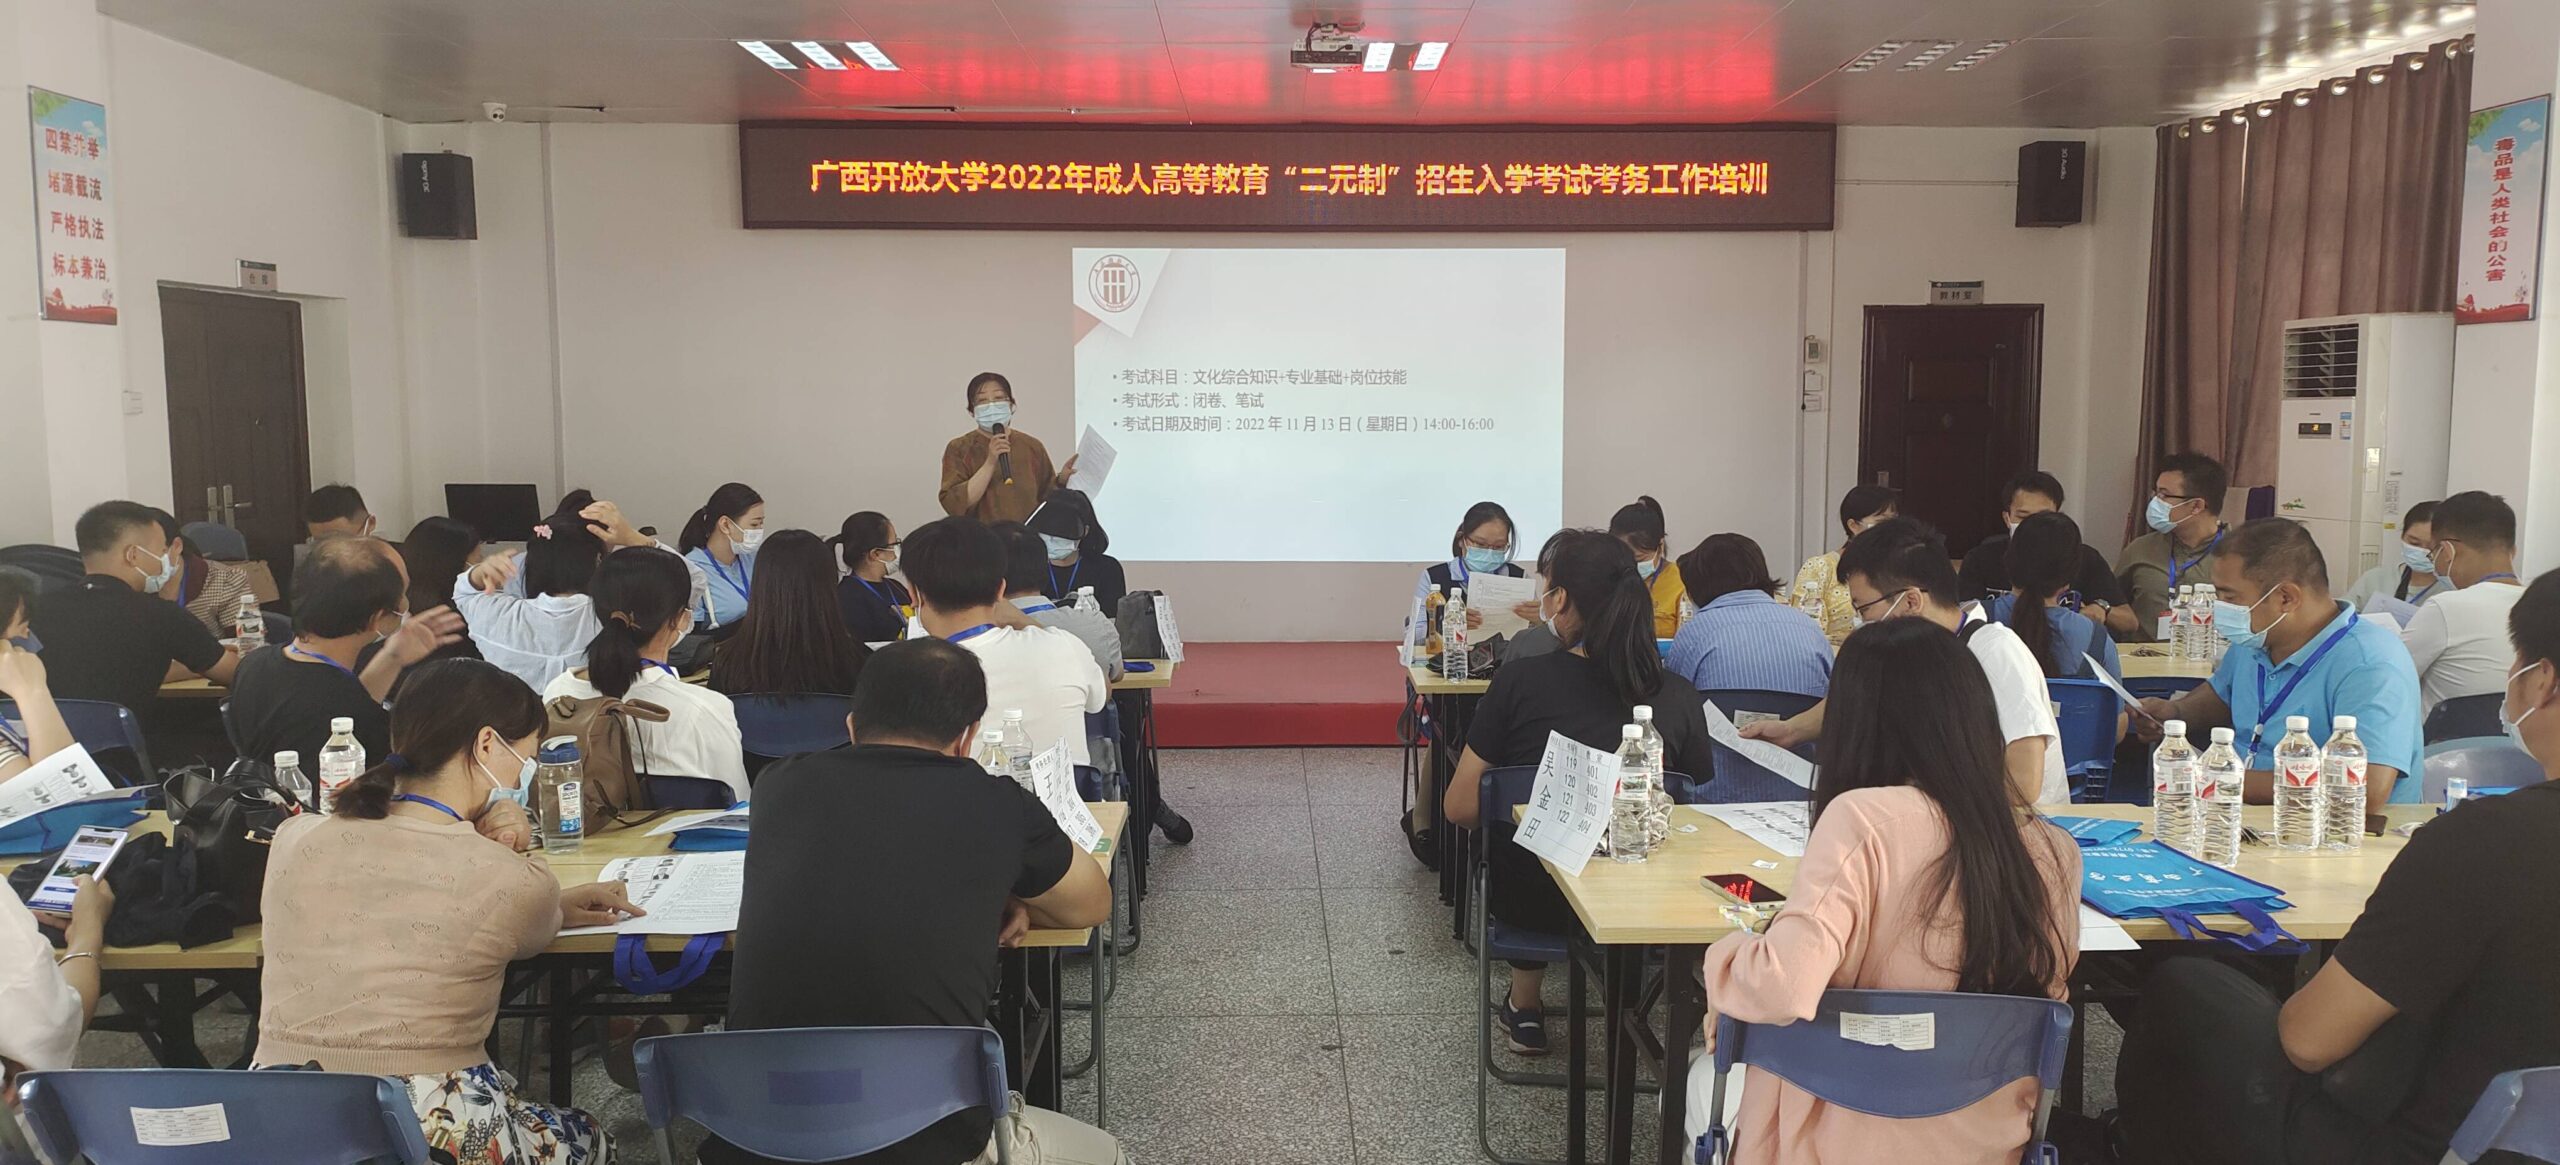 广西商业学校顺利完成广西开放大学2022年成人高等教育“二元制”招生入学考试考务工作